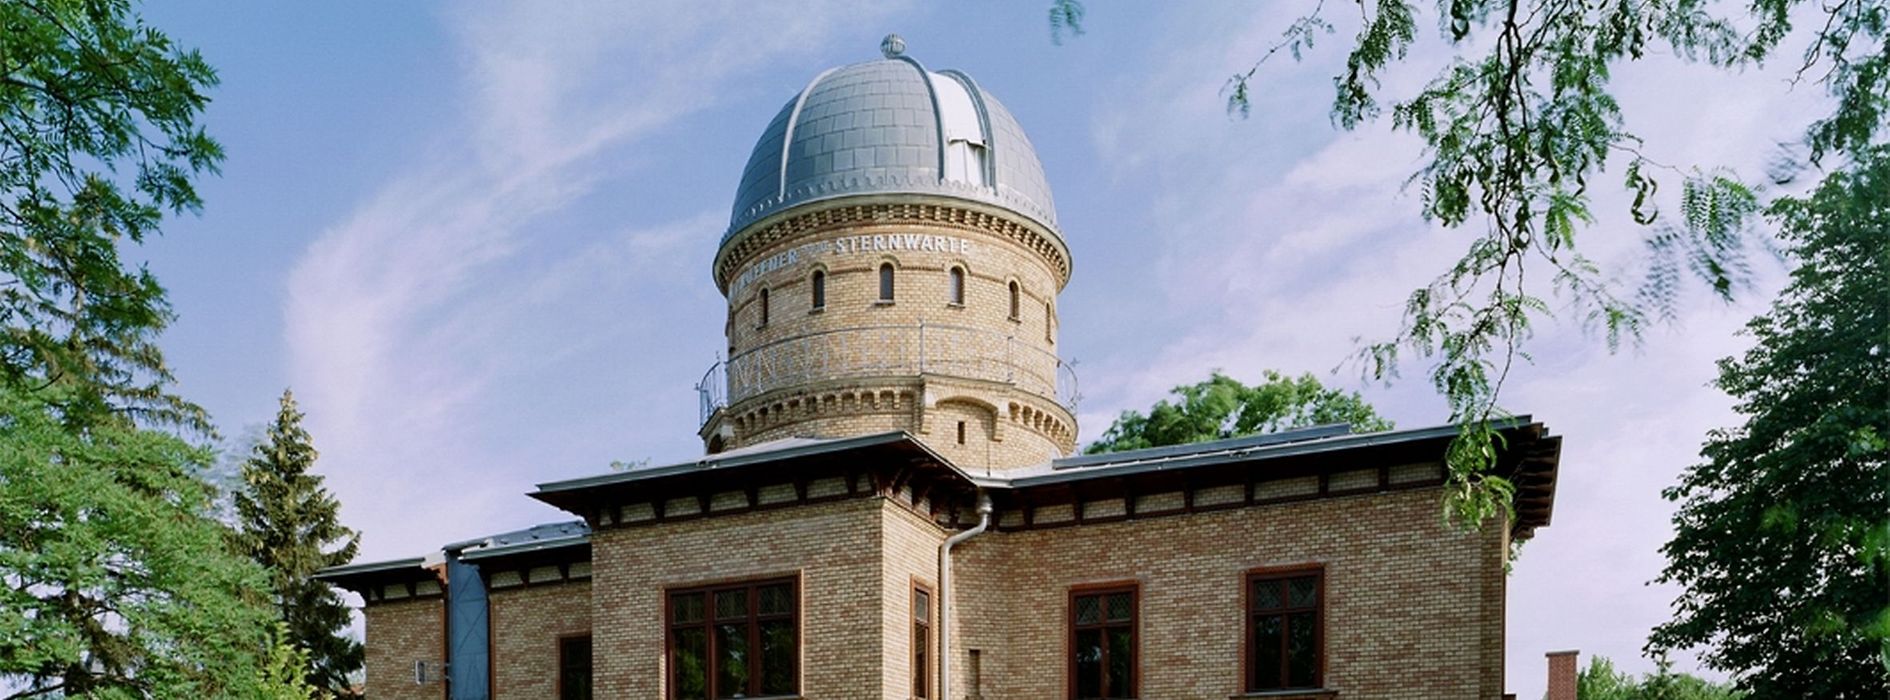 Obserwatorium Kuffnera